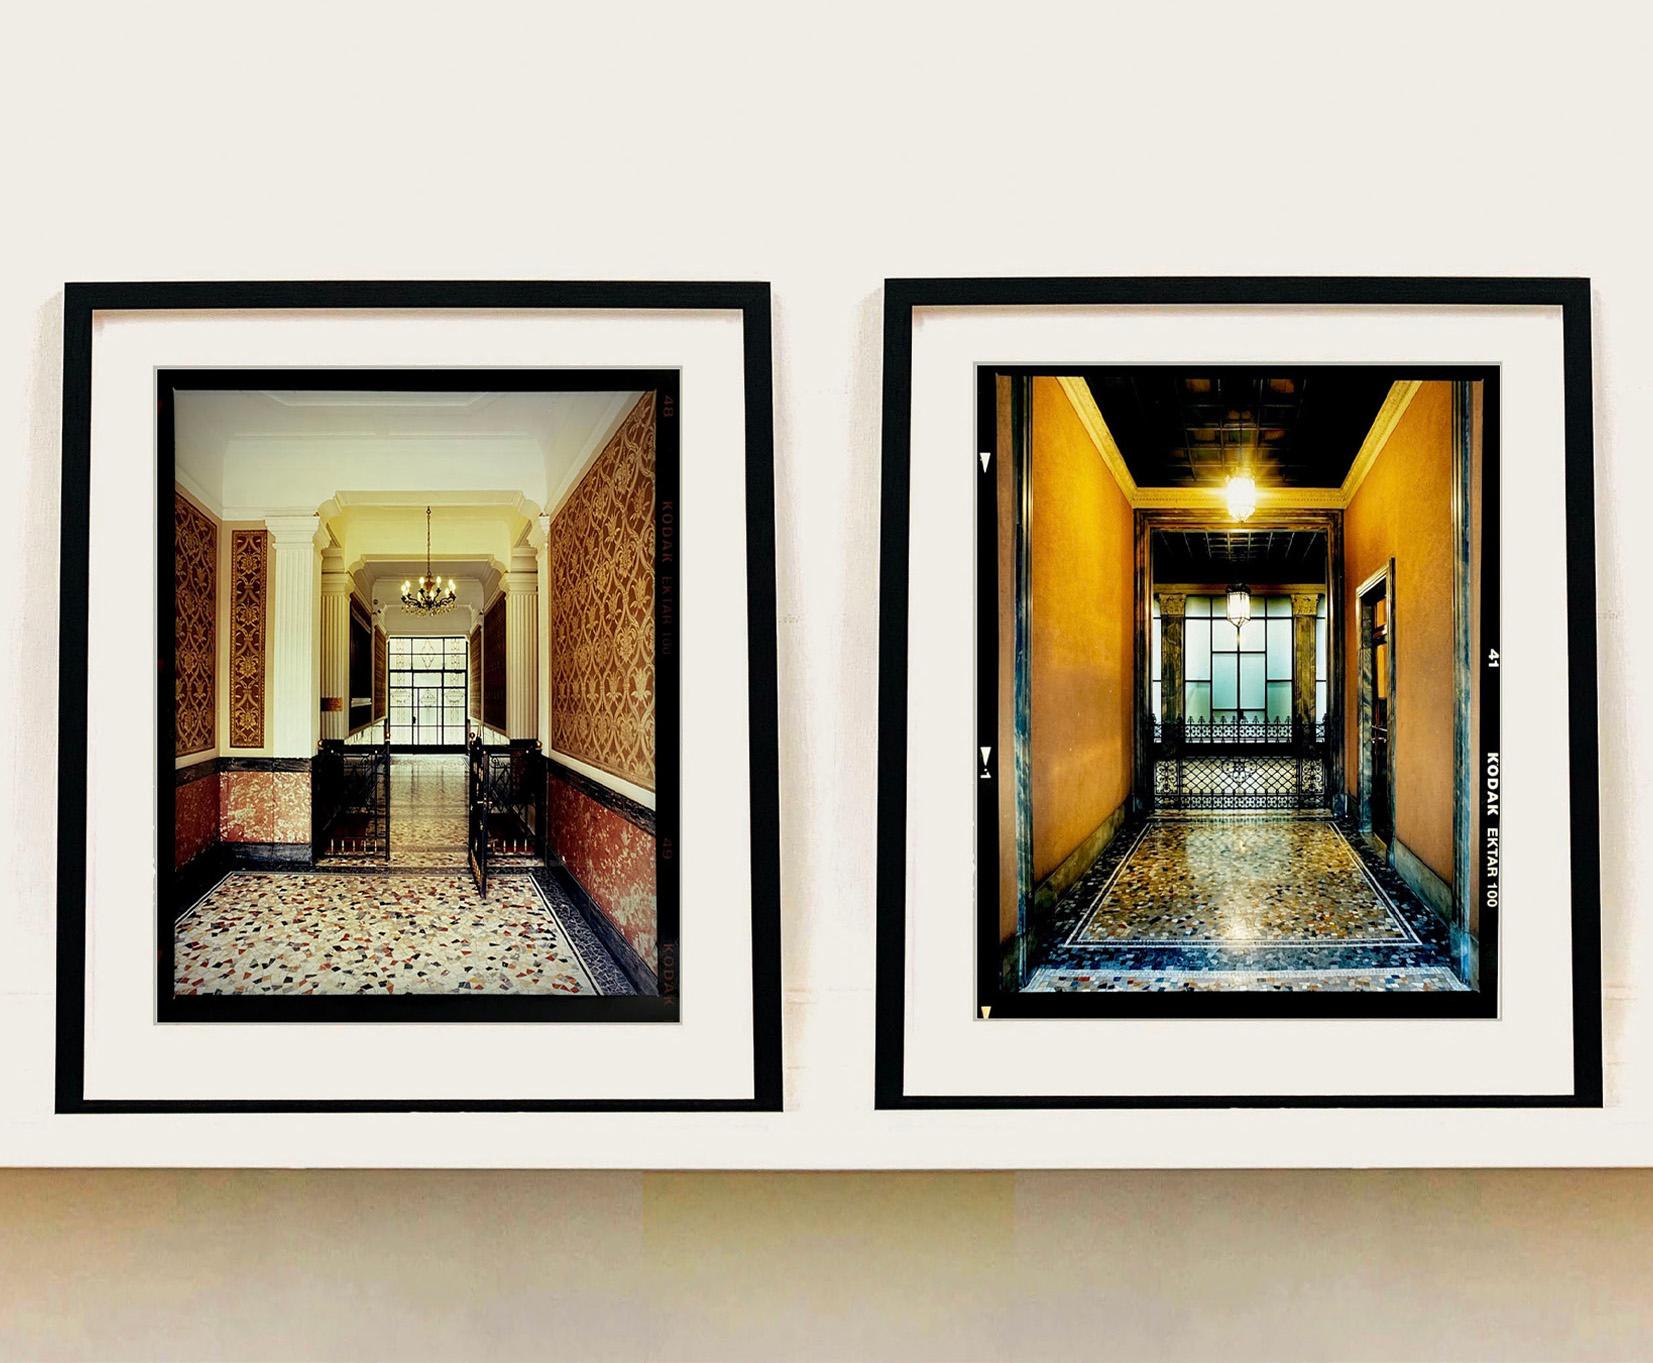 Foyer III, Mailand – Architekturfotografie in Farbfotografie (Schwarz), Print, von Richard Heeps